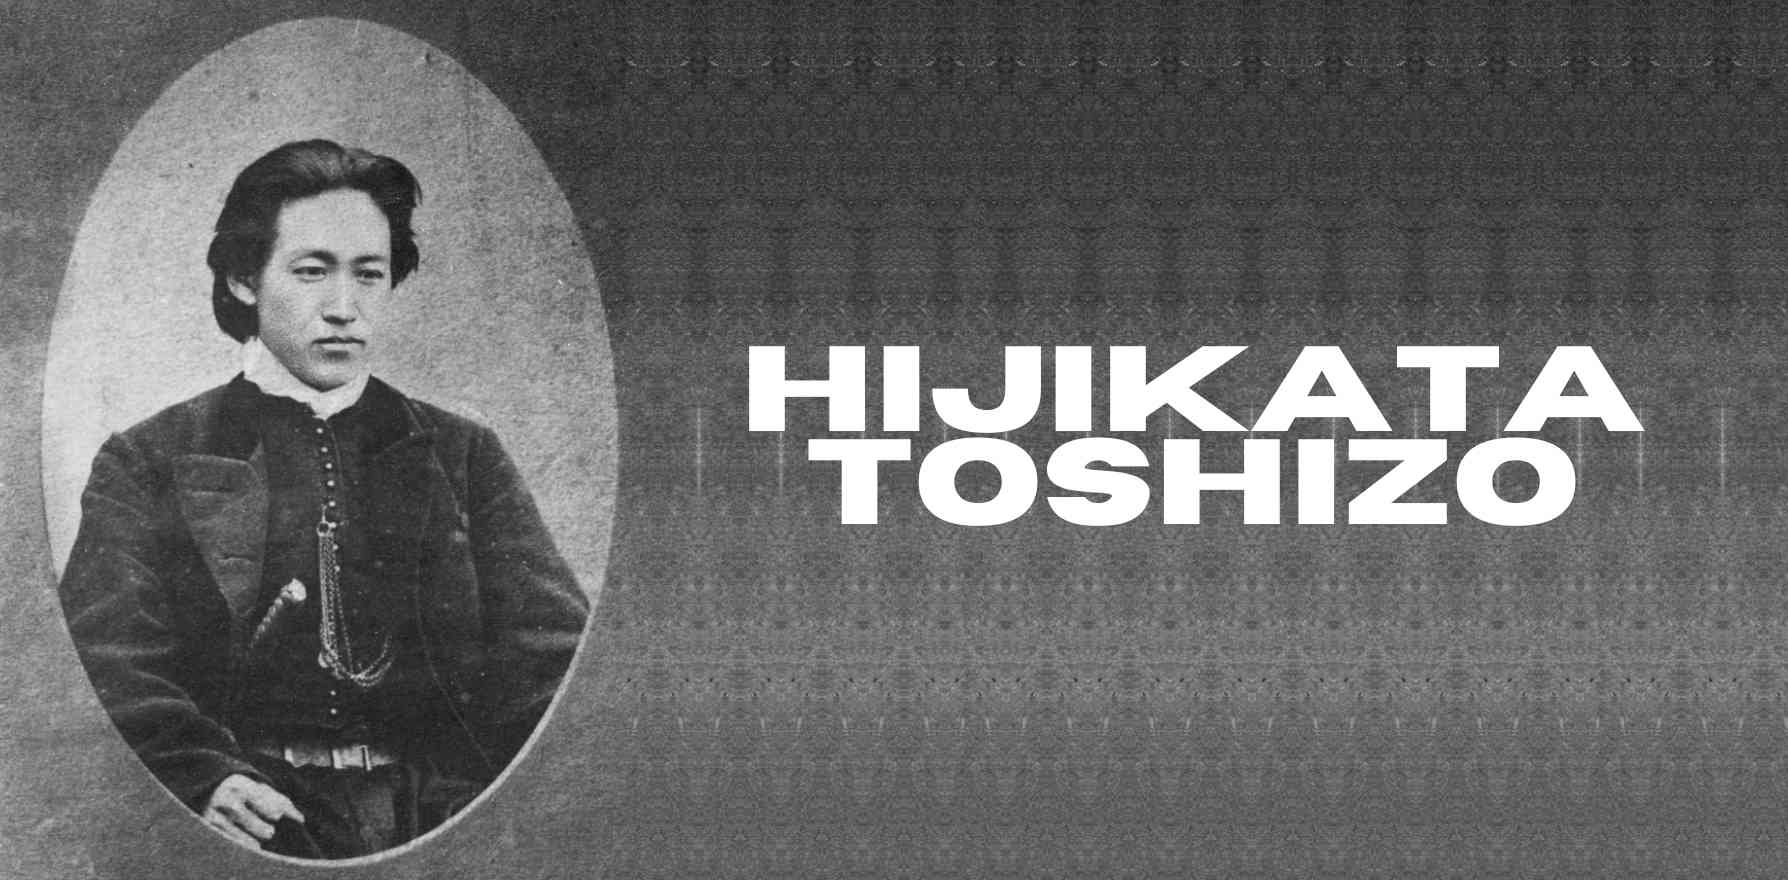 Hijikata Toshizo